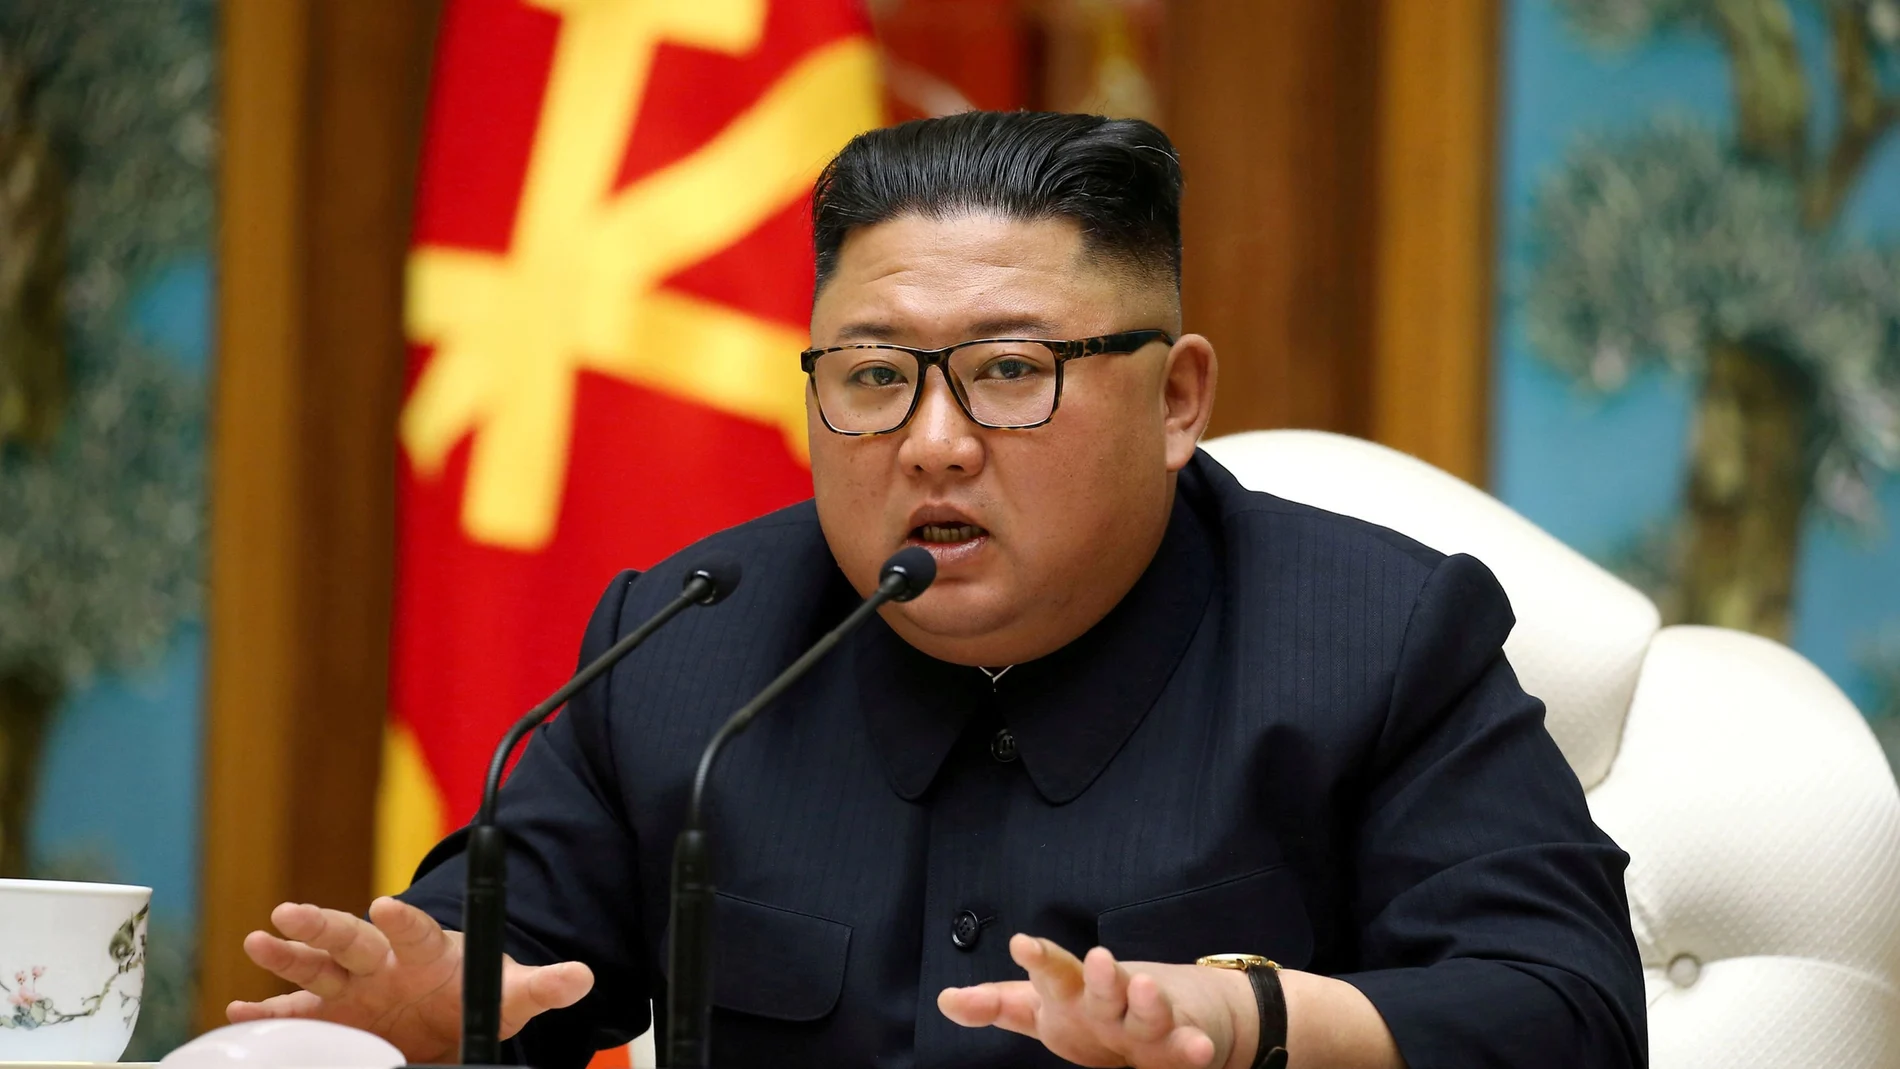 Le estado de salud de Kim Jong Un ha levantado muchas sospechas desde hace tiempo por tabaquismo y su exceso de peso